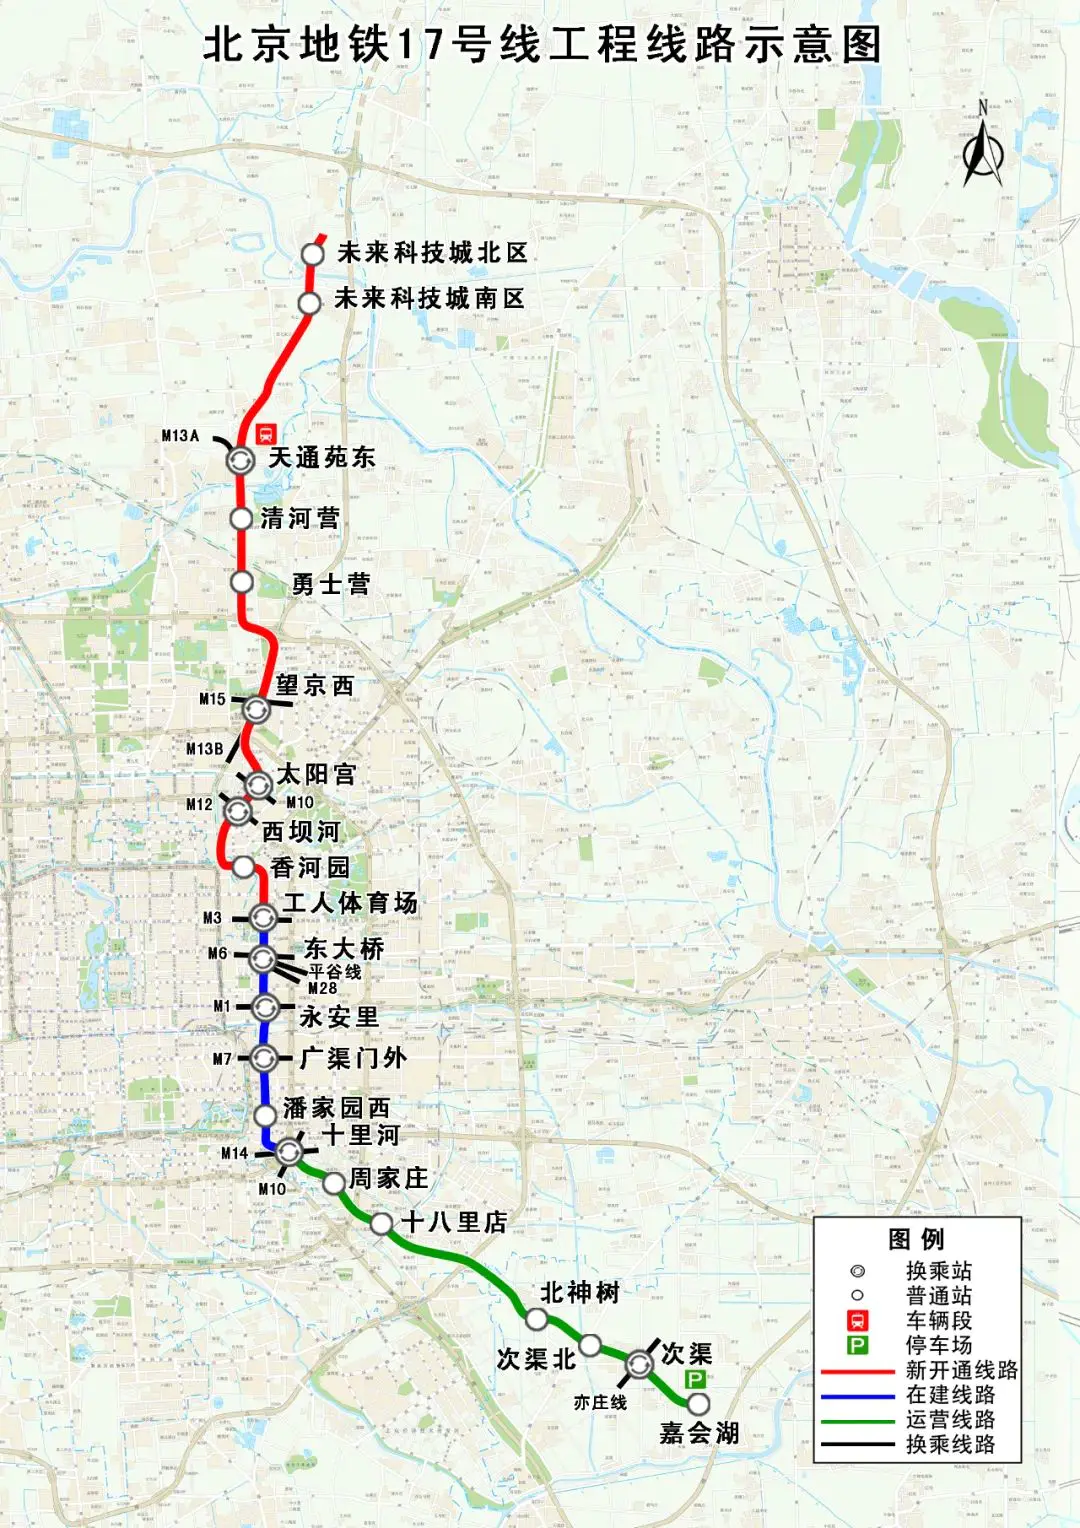 地铁线路最新线图北京号段查询_北京地铁17号线最新线路图_地铁线路北京地铁线路图